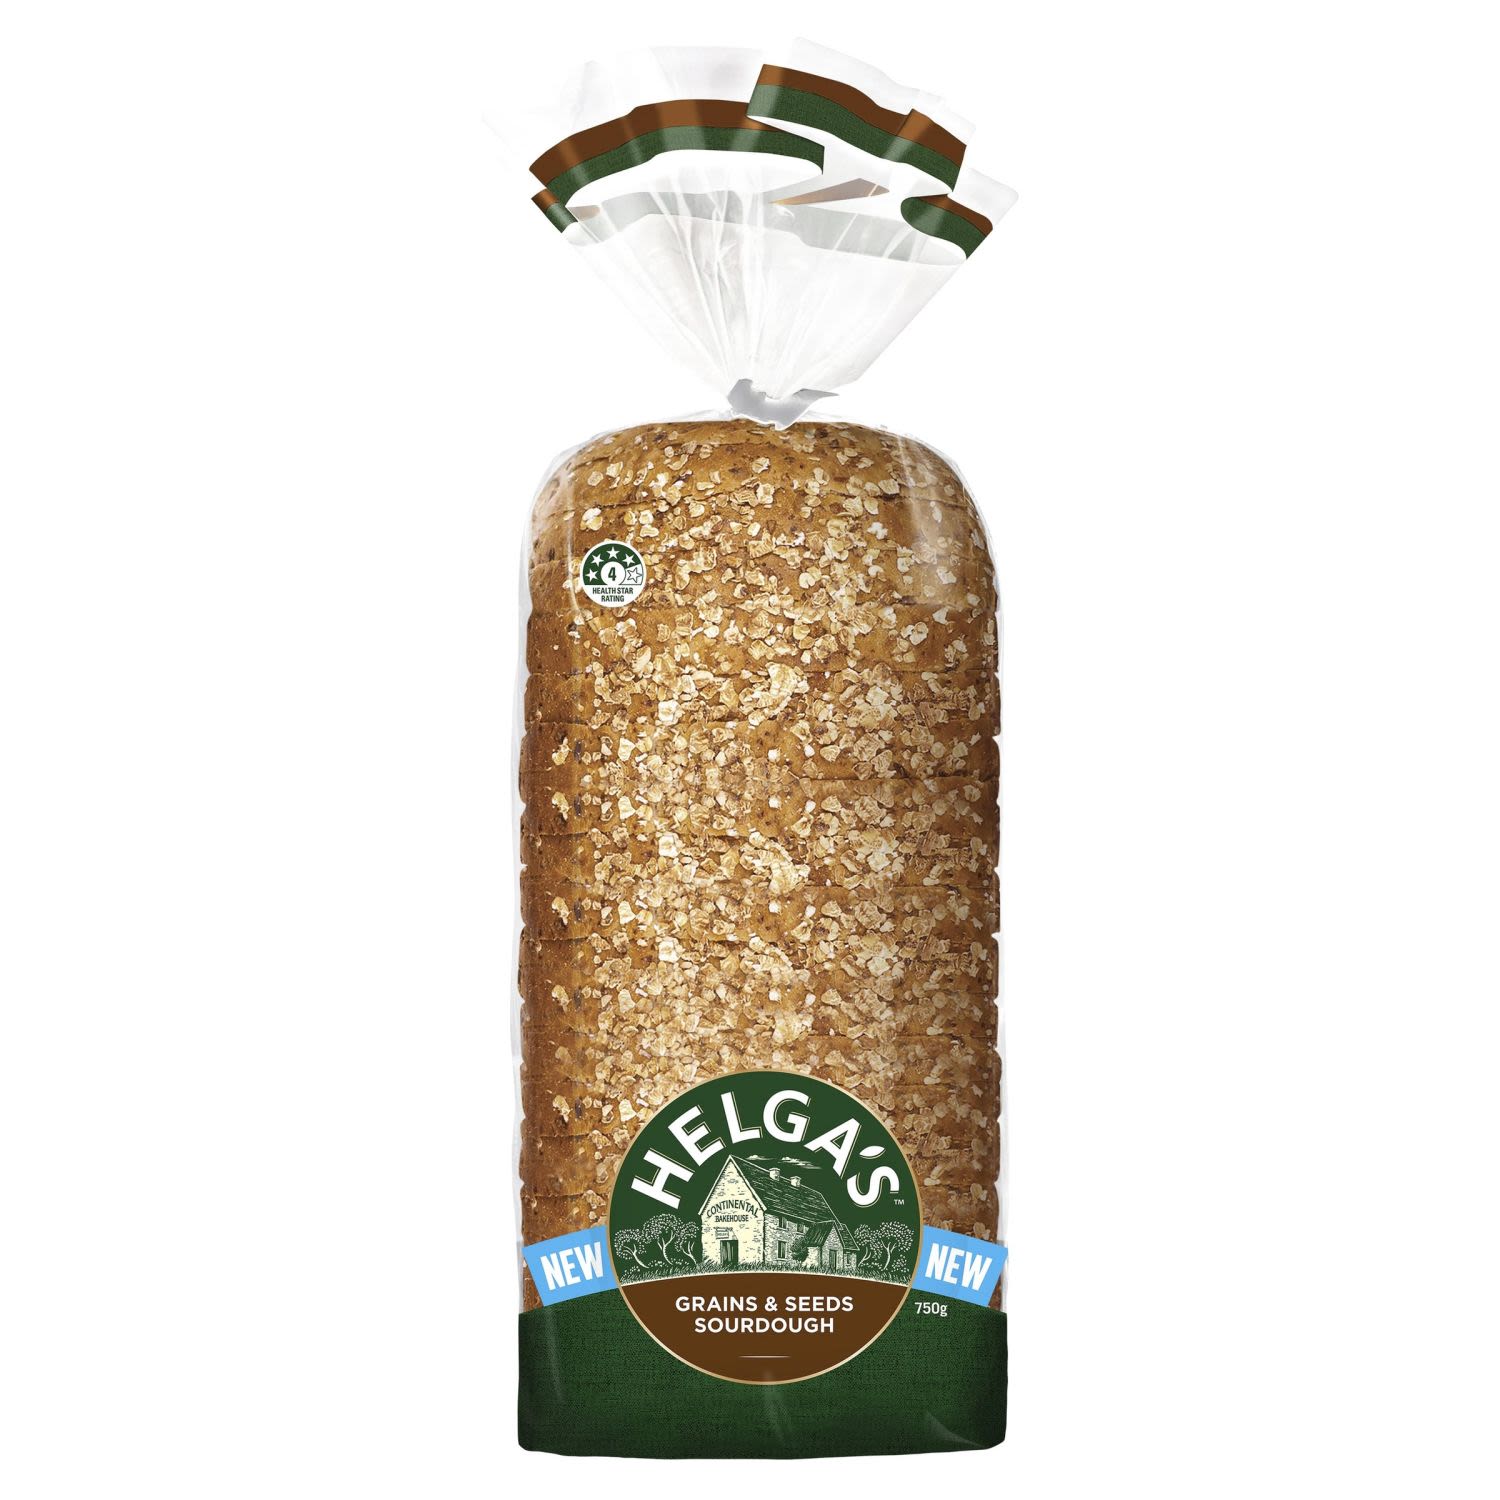 Helga's Grains & Seeds Sourdough Loaf, 750 Gram